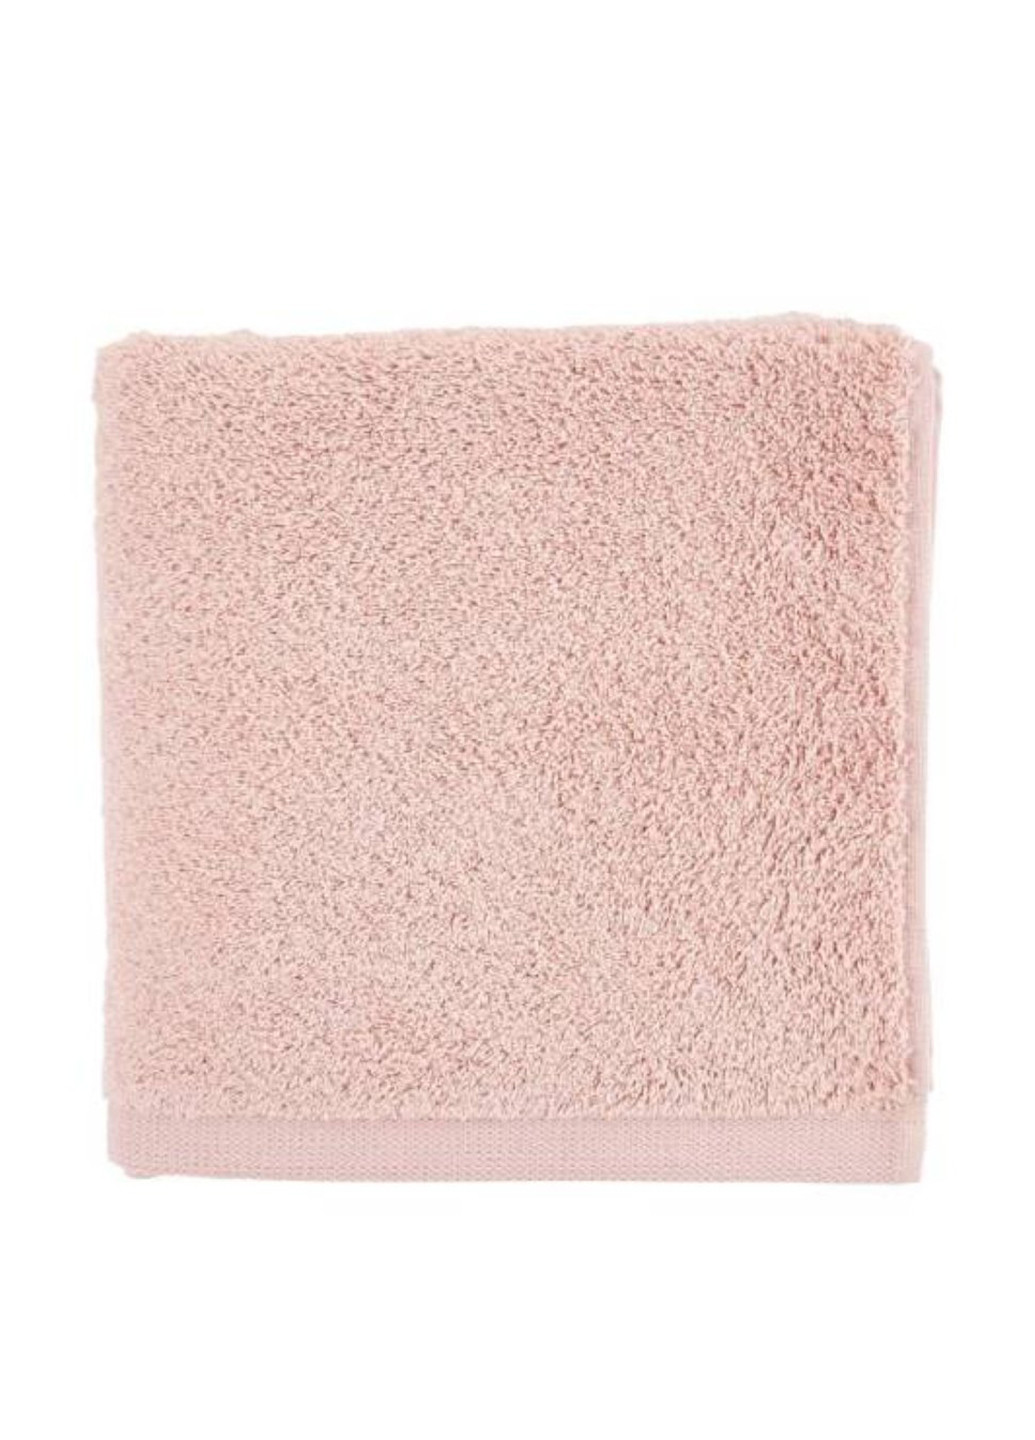 Butlers полотенце, 50х100 см однотонный розовый производство - Португалия